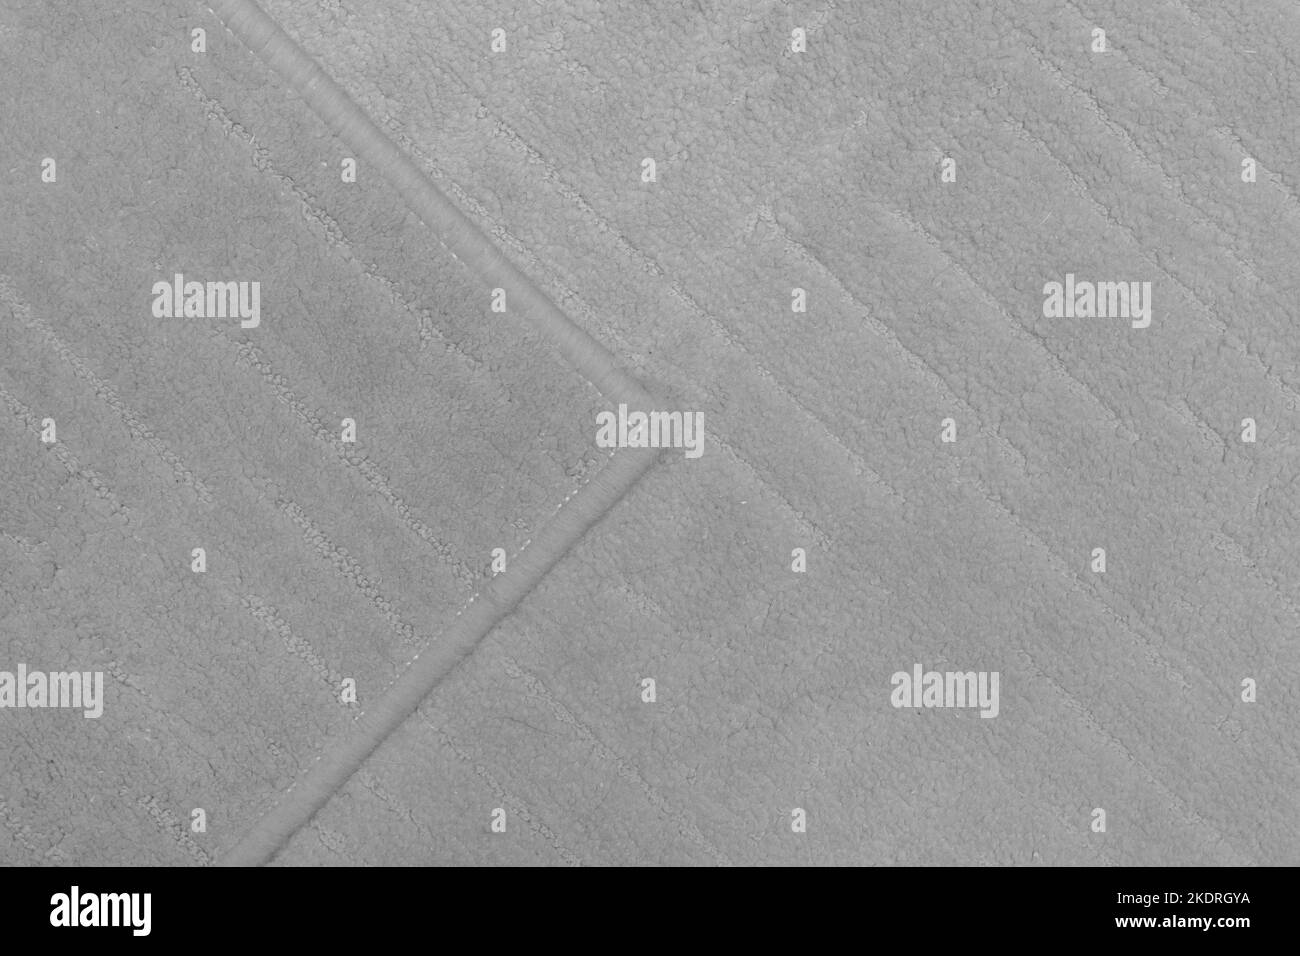 Dettaglio tappeto frammento di tessuto per pavimento in materiale grigio per la texture della superficie della parte di disegno. Foto Stock